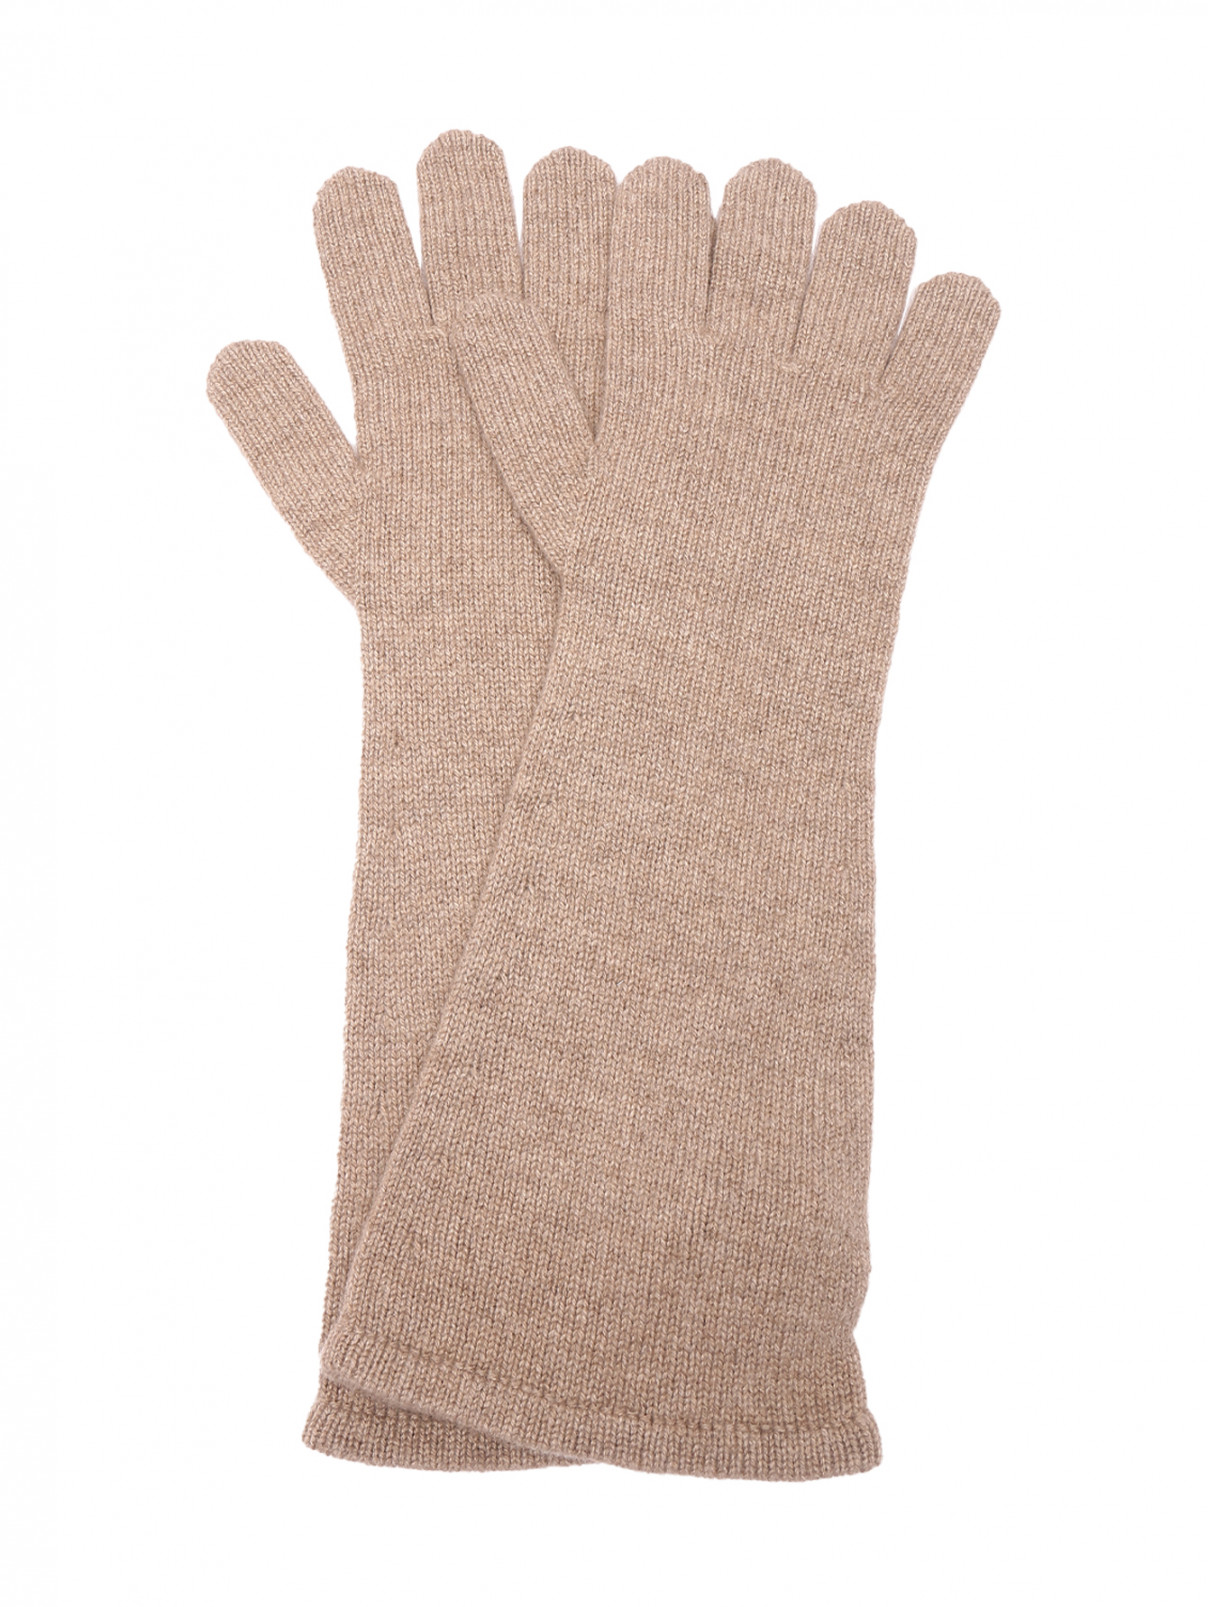 Длинные перчатки из кашемира Max Mara  –  Общий вид  – Цвет:  Бежевый